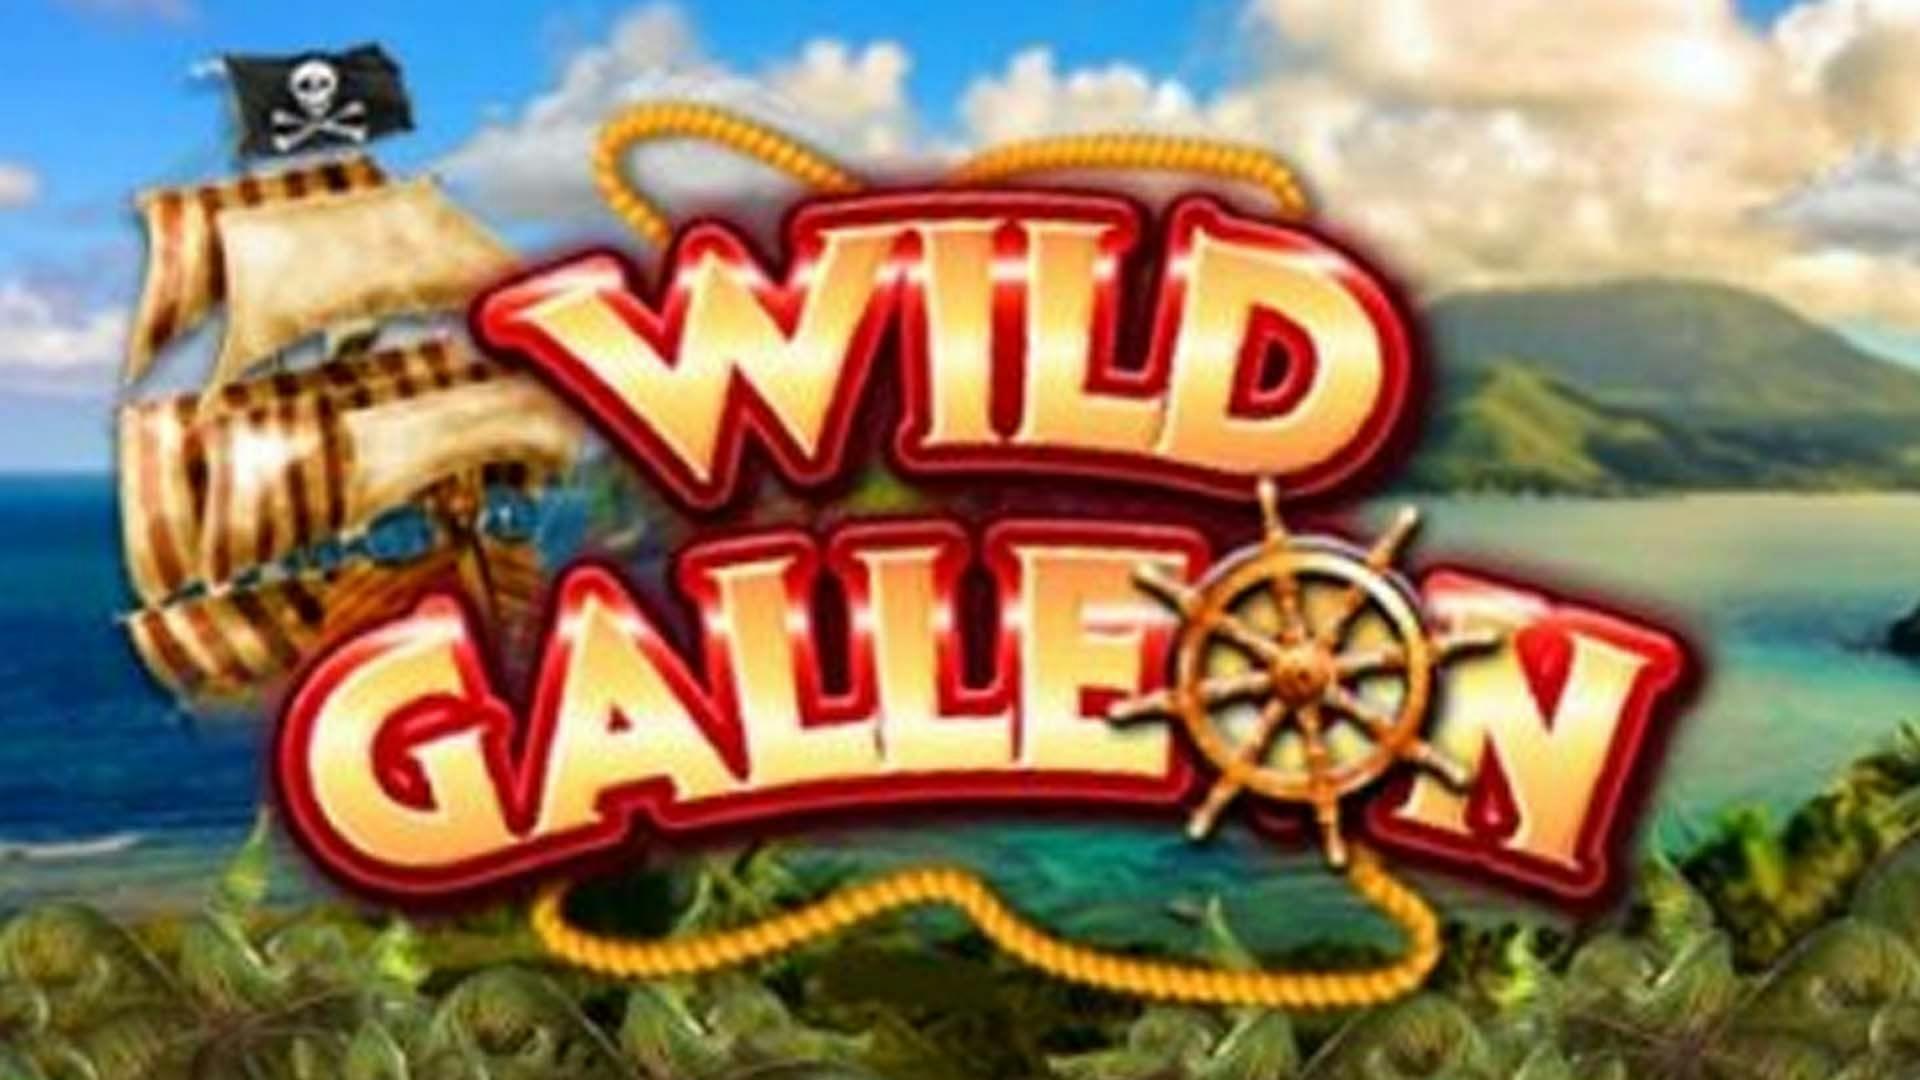 Wild Galleon Free Demo Online Game